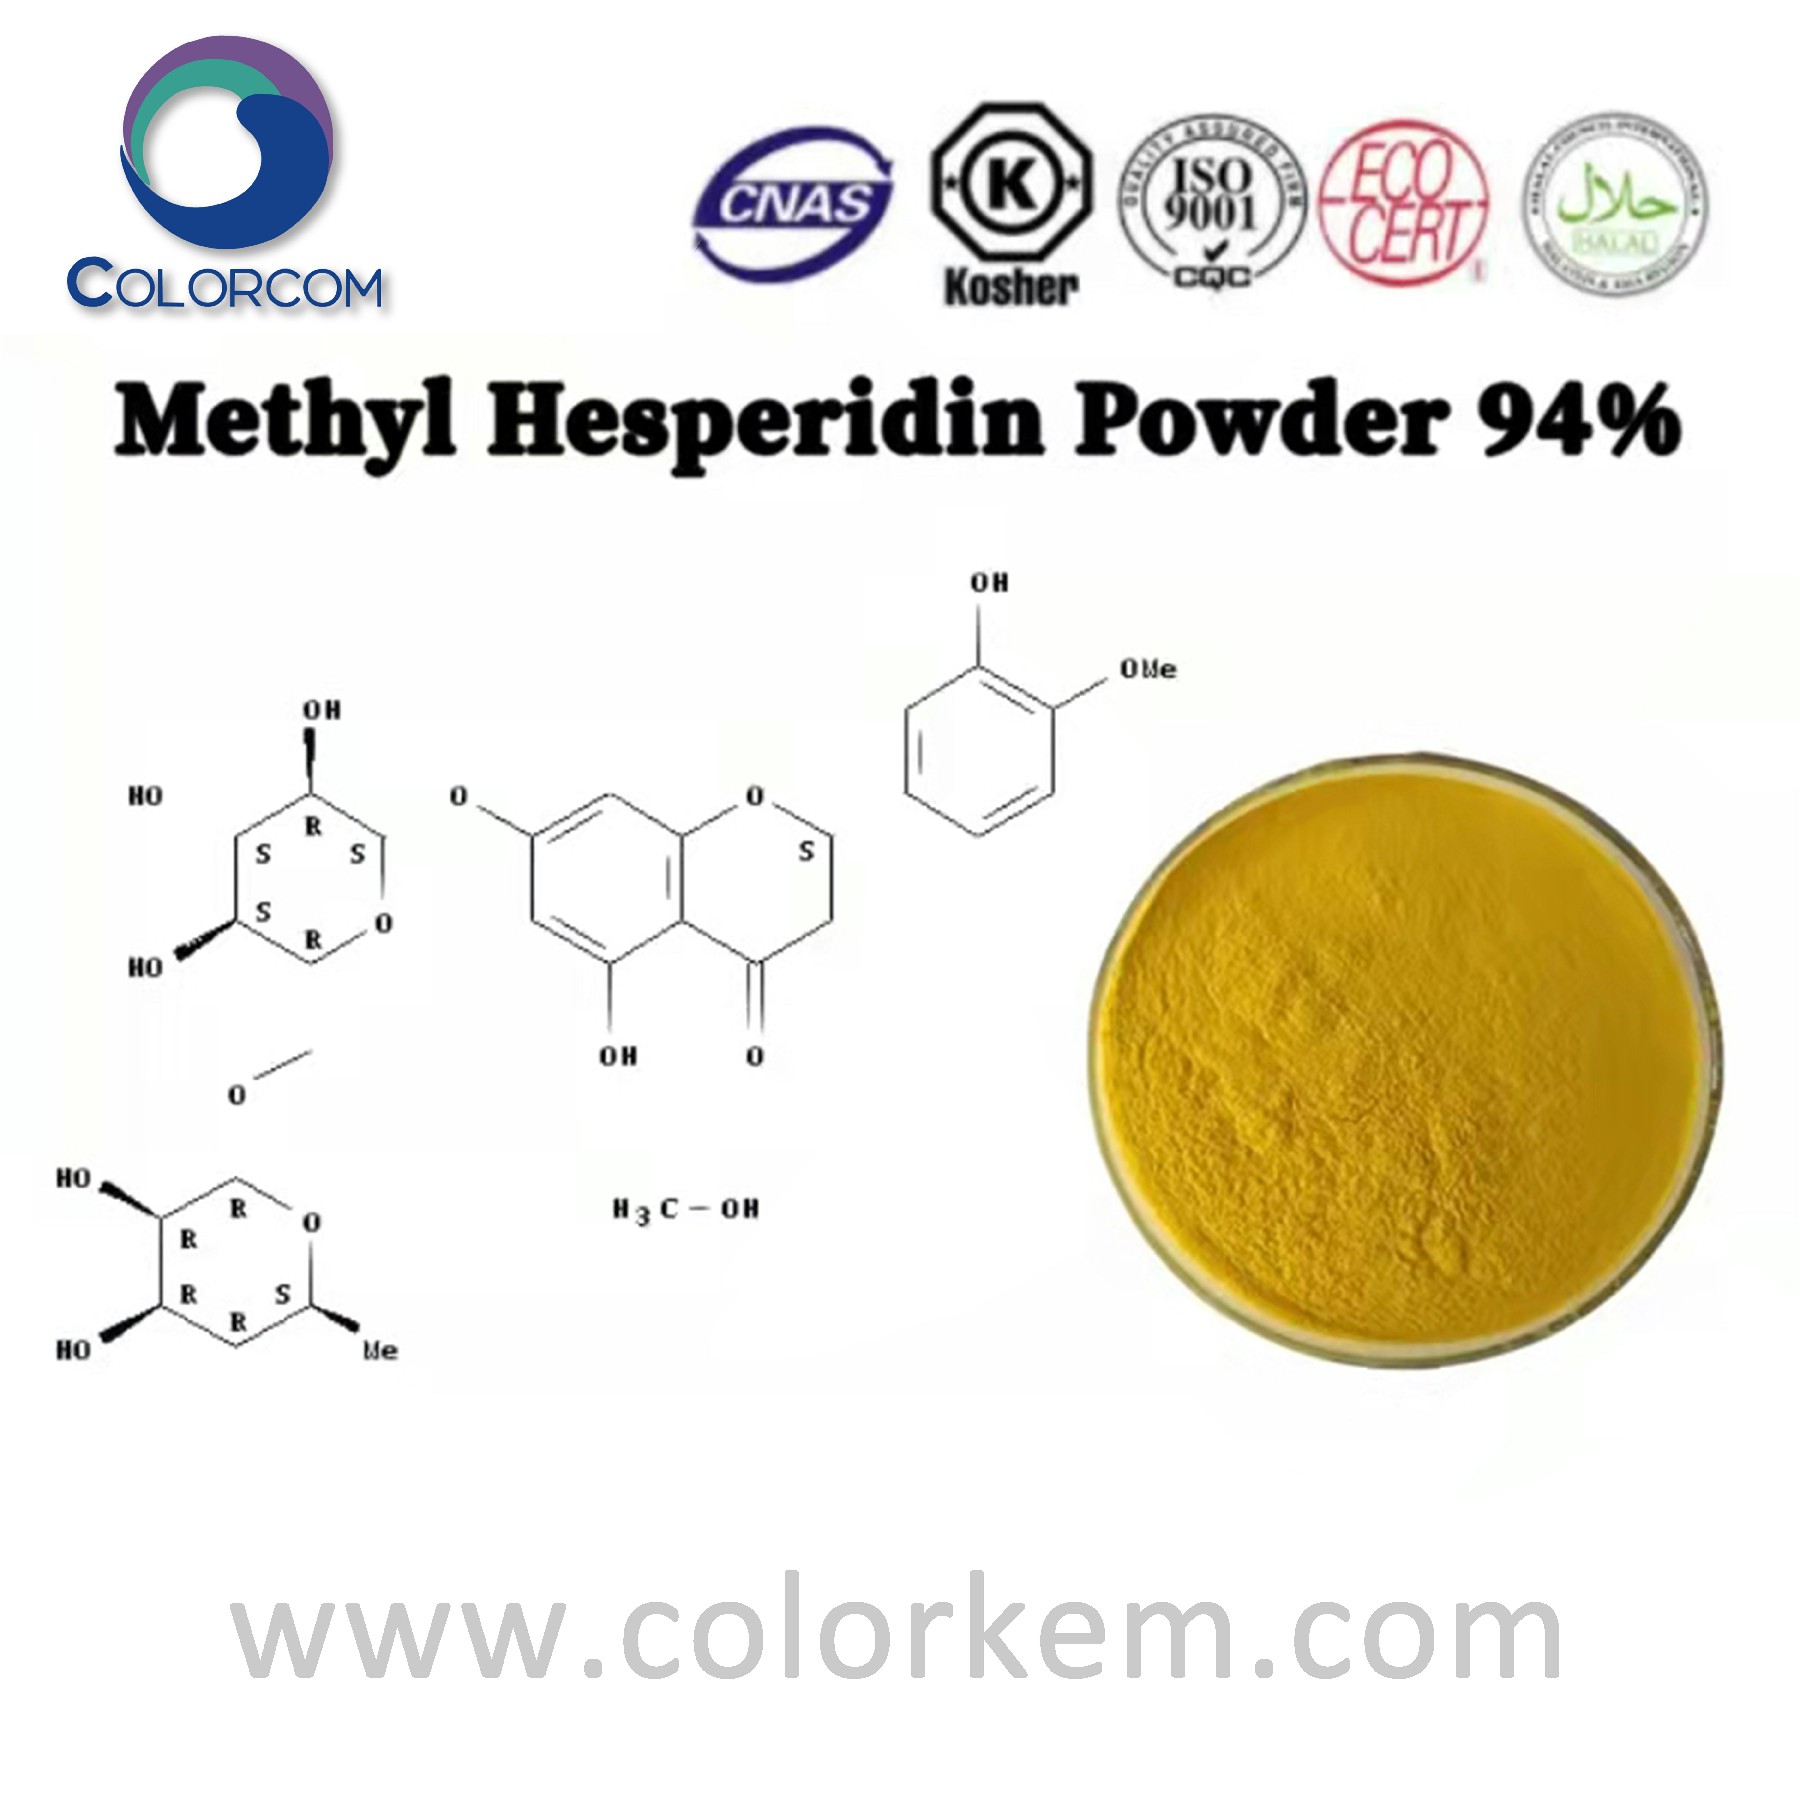 Methyl hesperidin powder